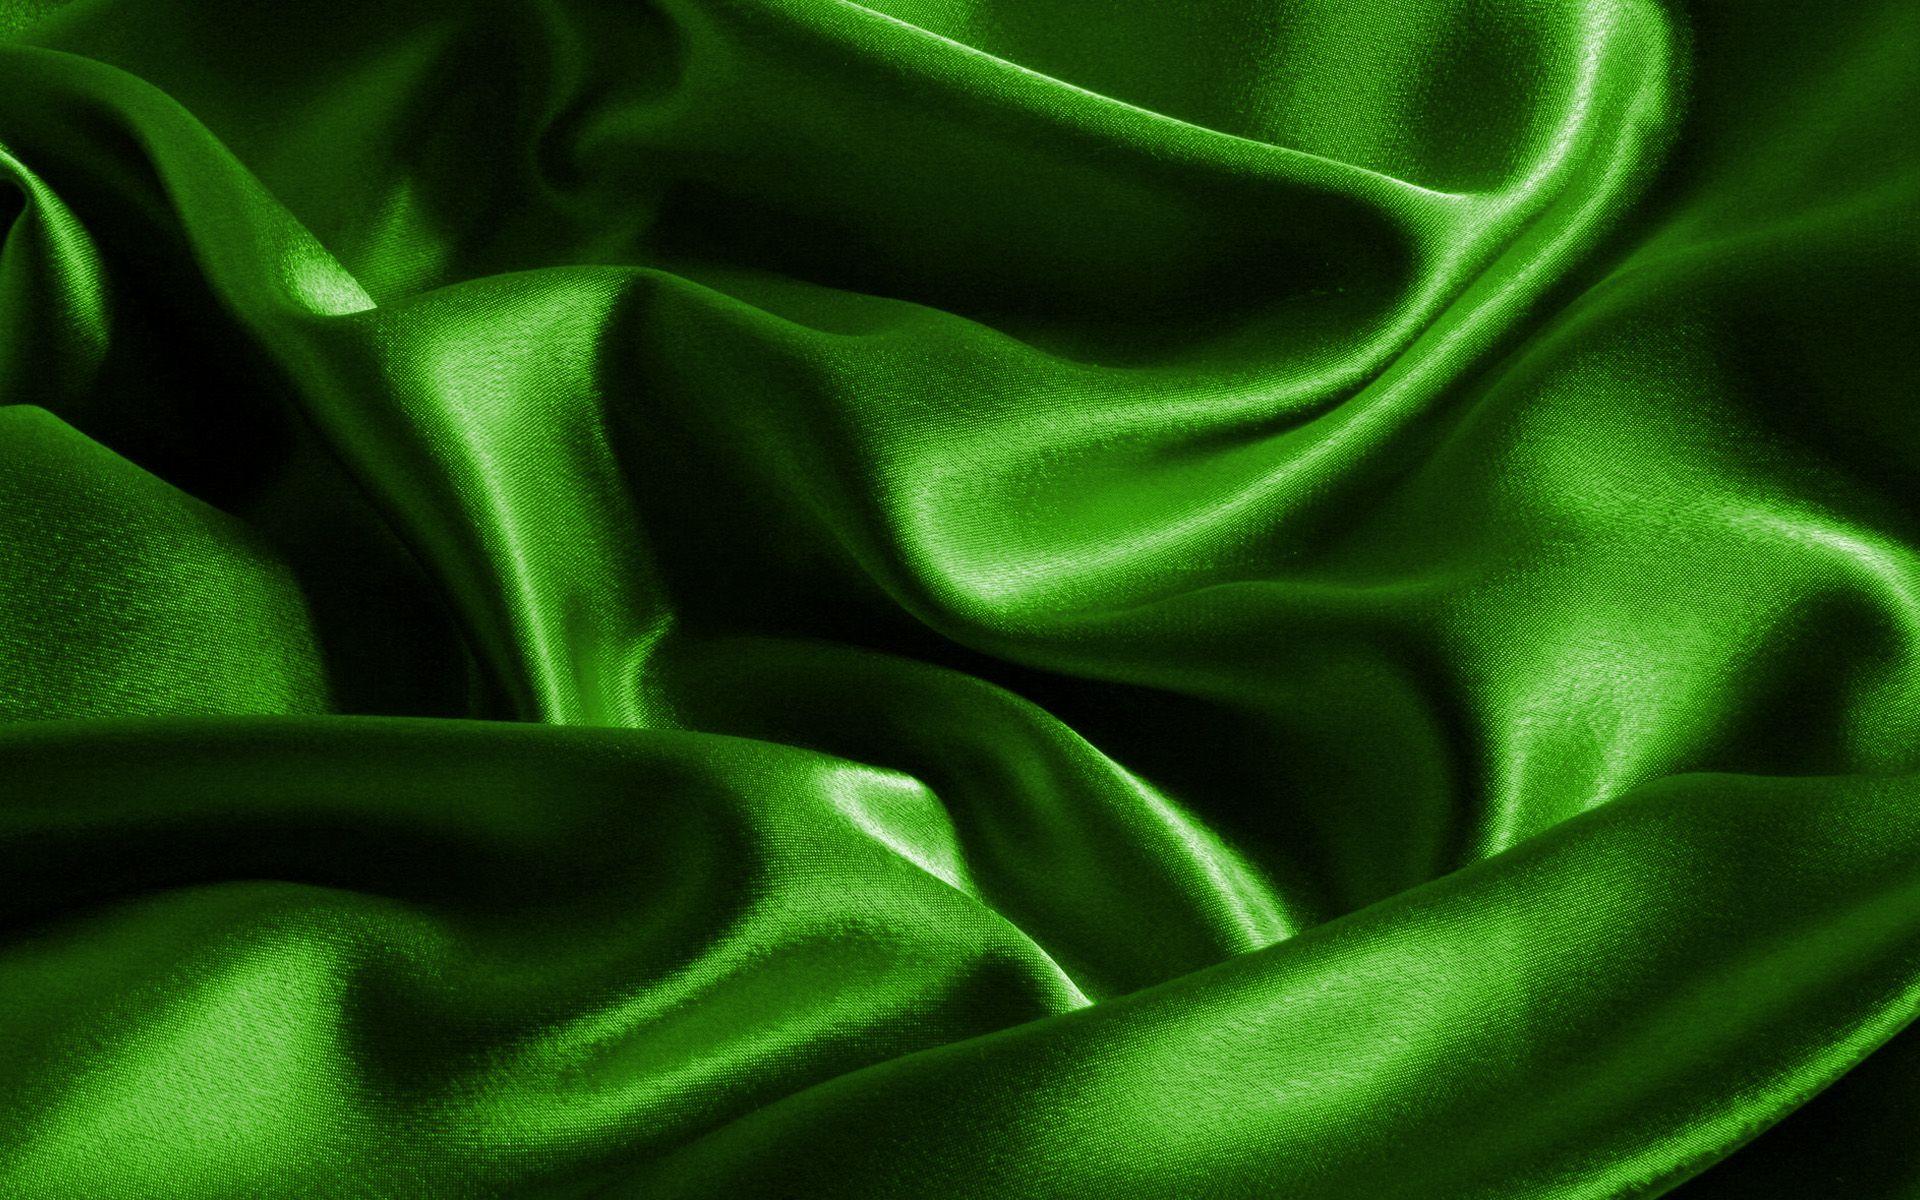 Green Silk Wallpapers Top Free Green Silk Backgrounds Wallpaperaccess